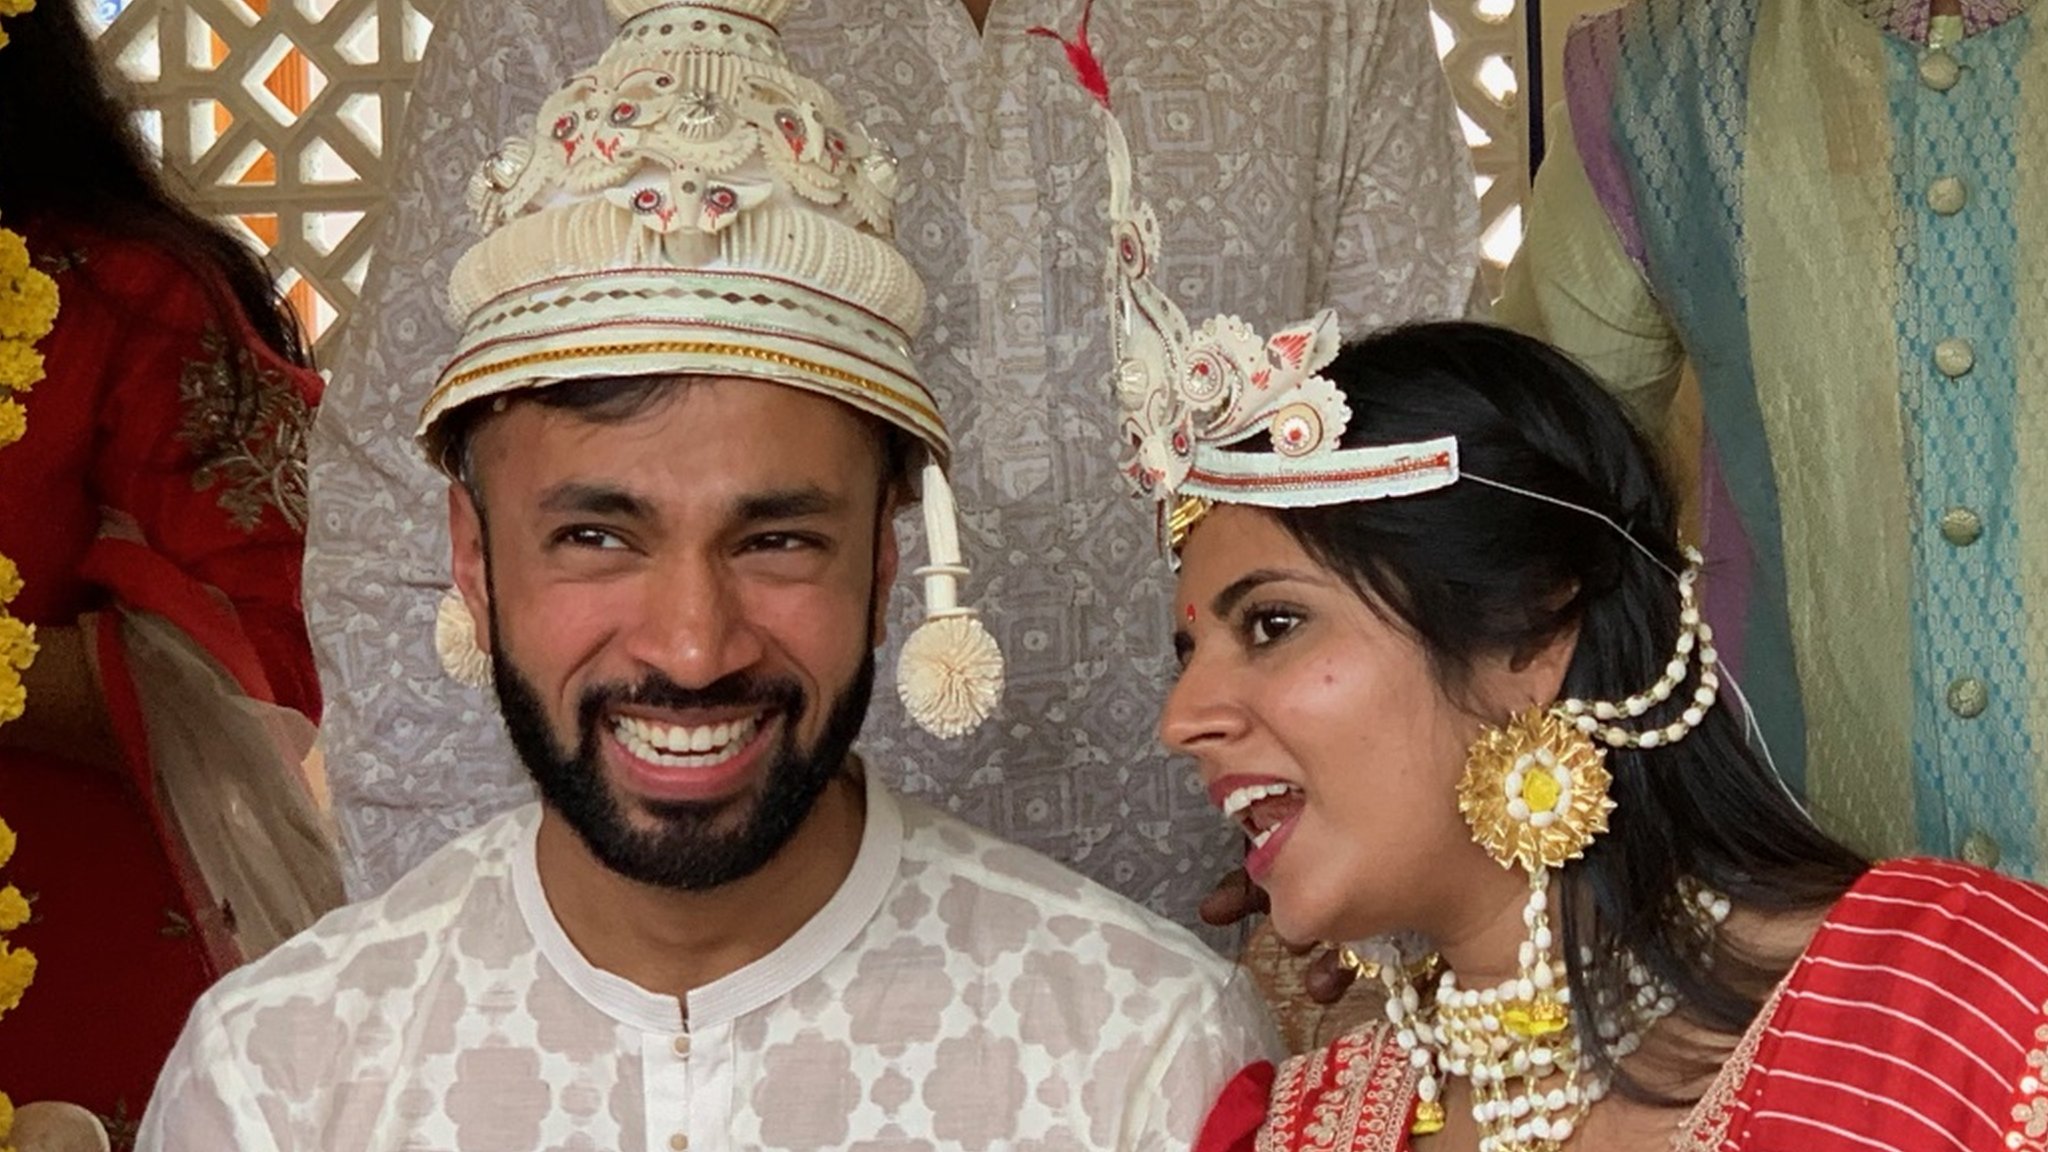 "Encontré a mi esposa tras mirar 300 hojas de vidas"; cómo es una boda arreglada en India